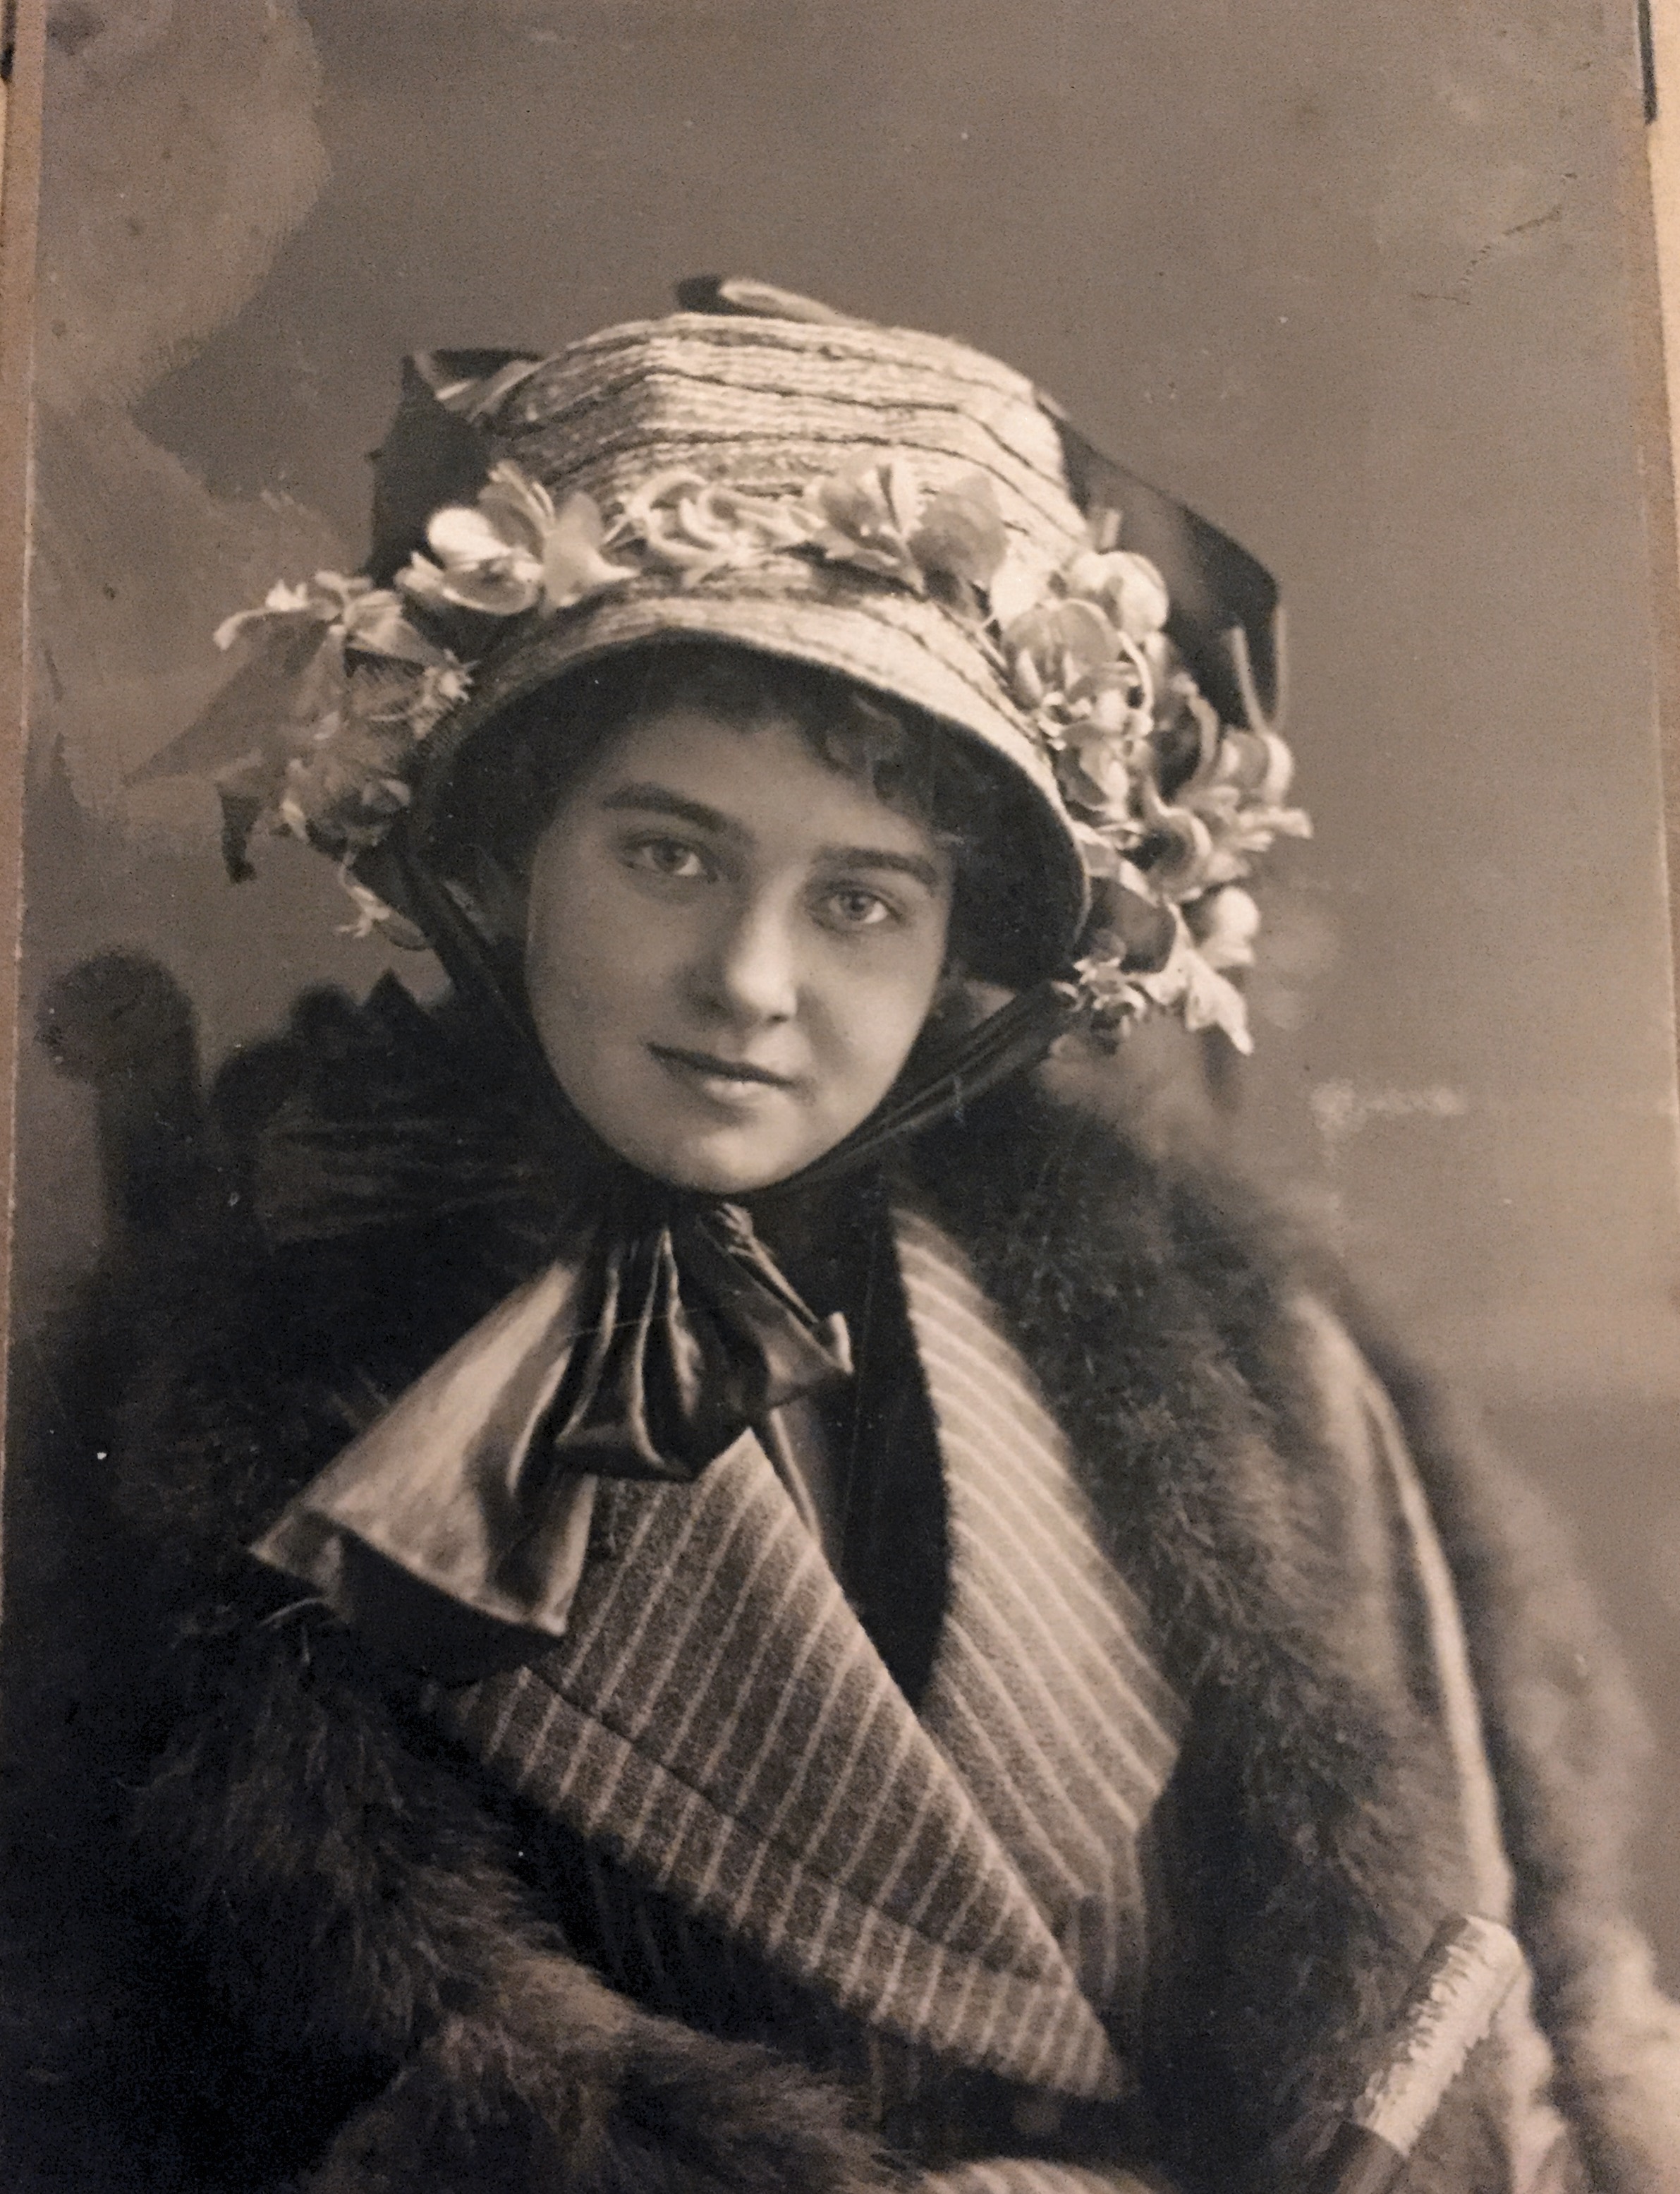 Mormor Ruth född 1896 gick i fotolära hos Raquet Andralånggatan 14 Göteborg